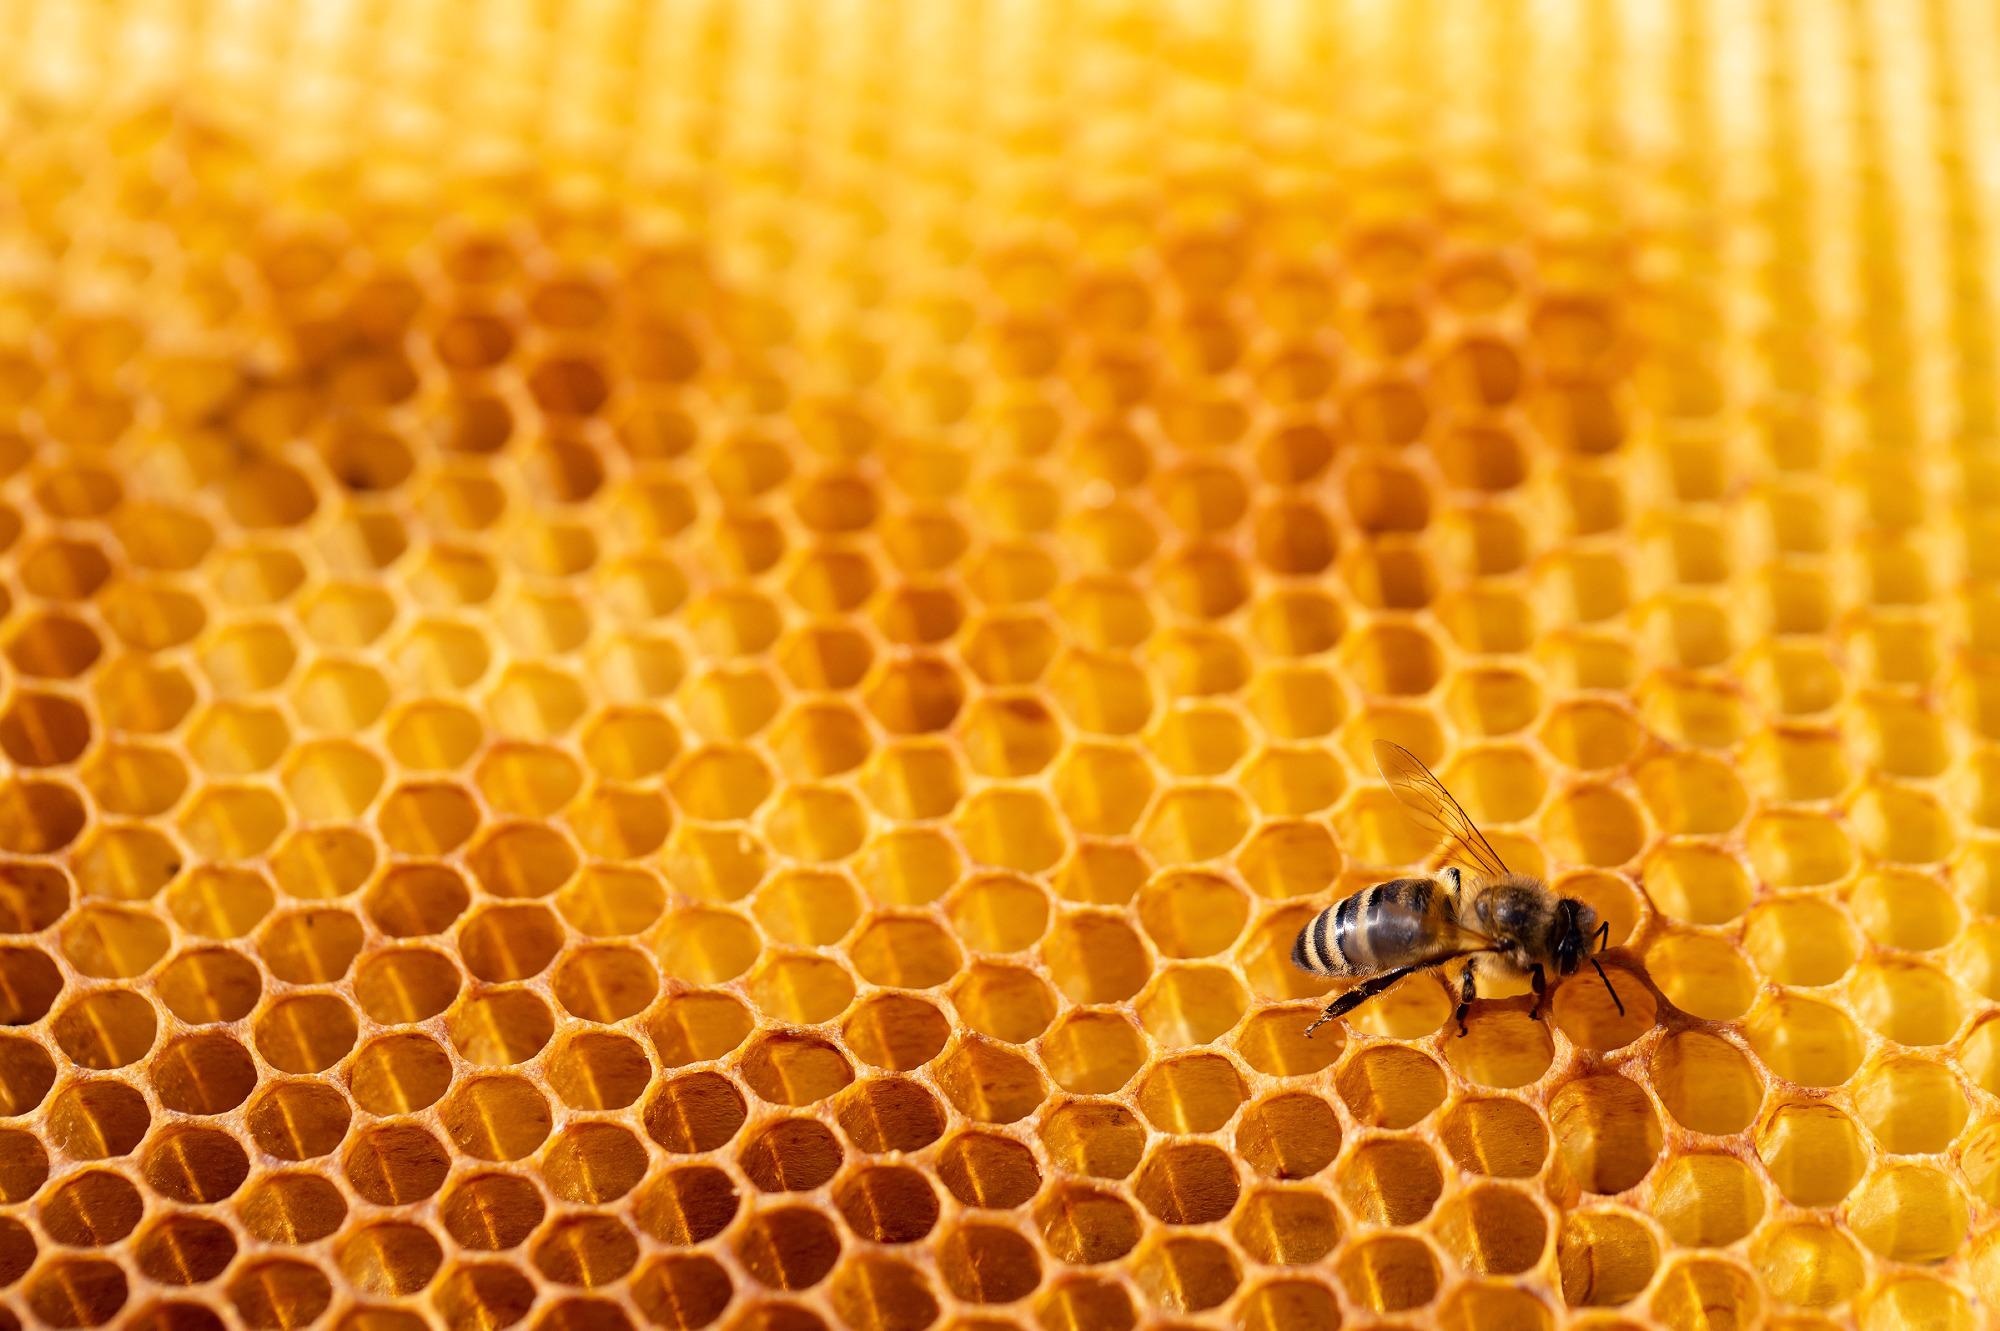 Electrochemical Sensor for the Ultrasensitive Detection of Nitrobenzene in Honey.